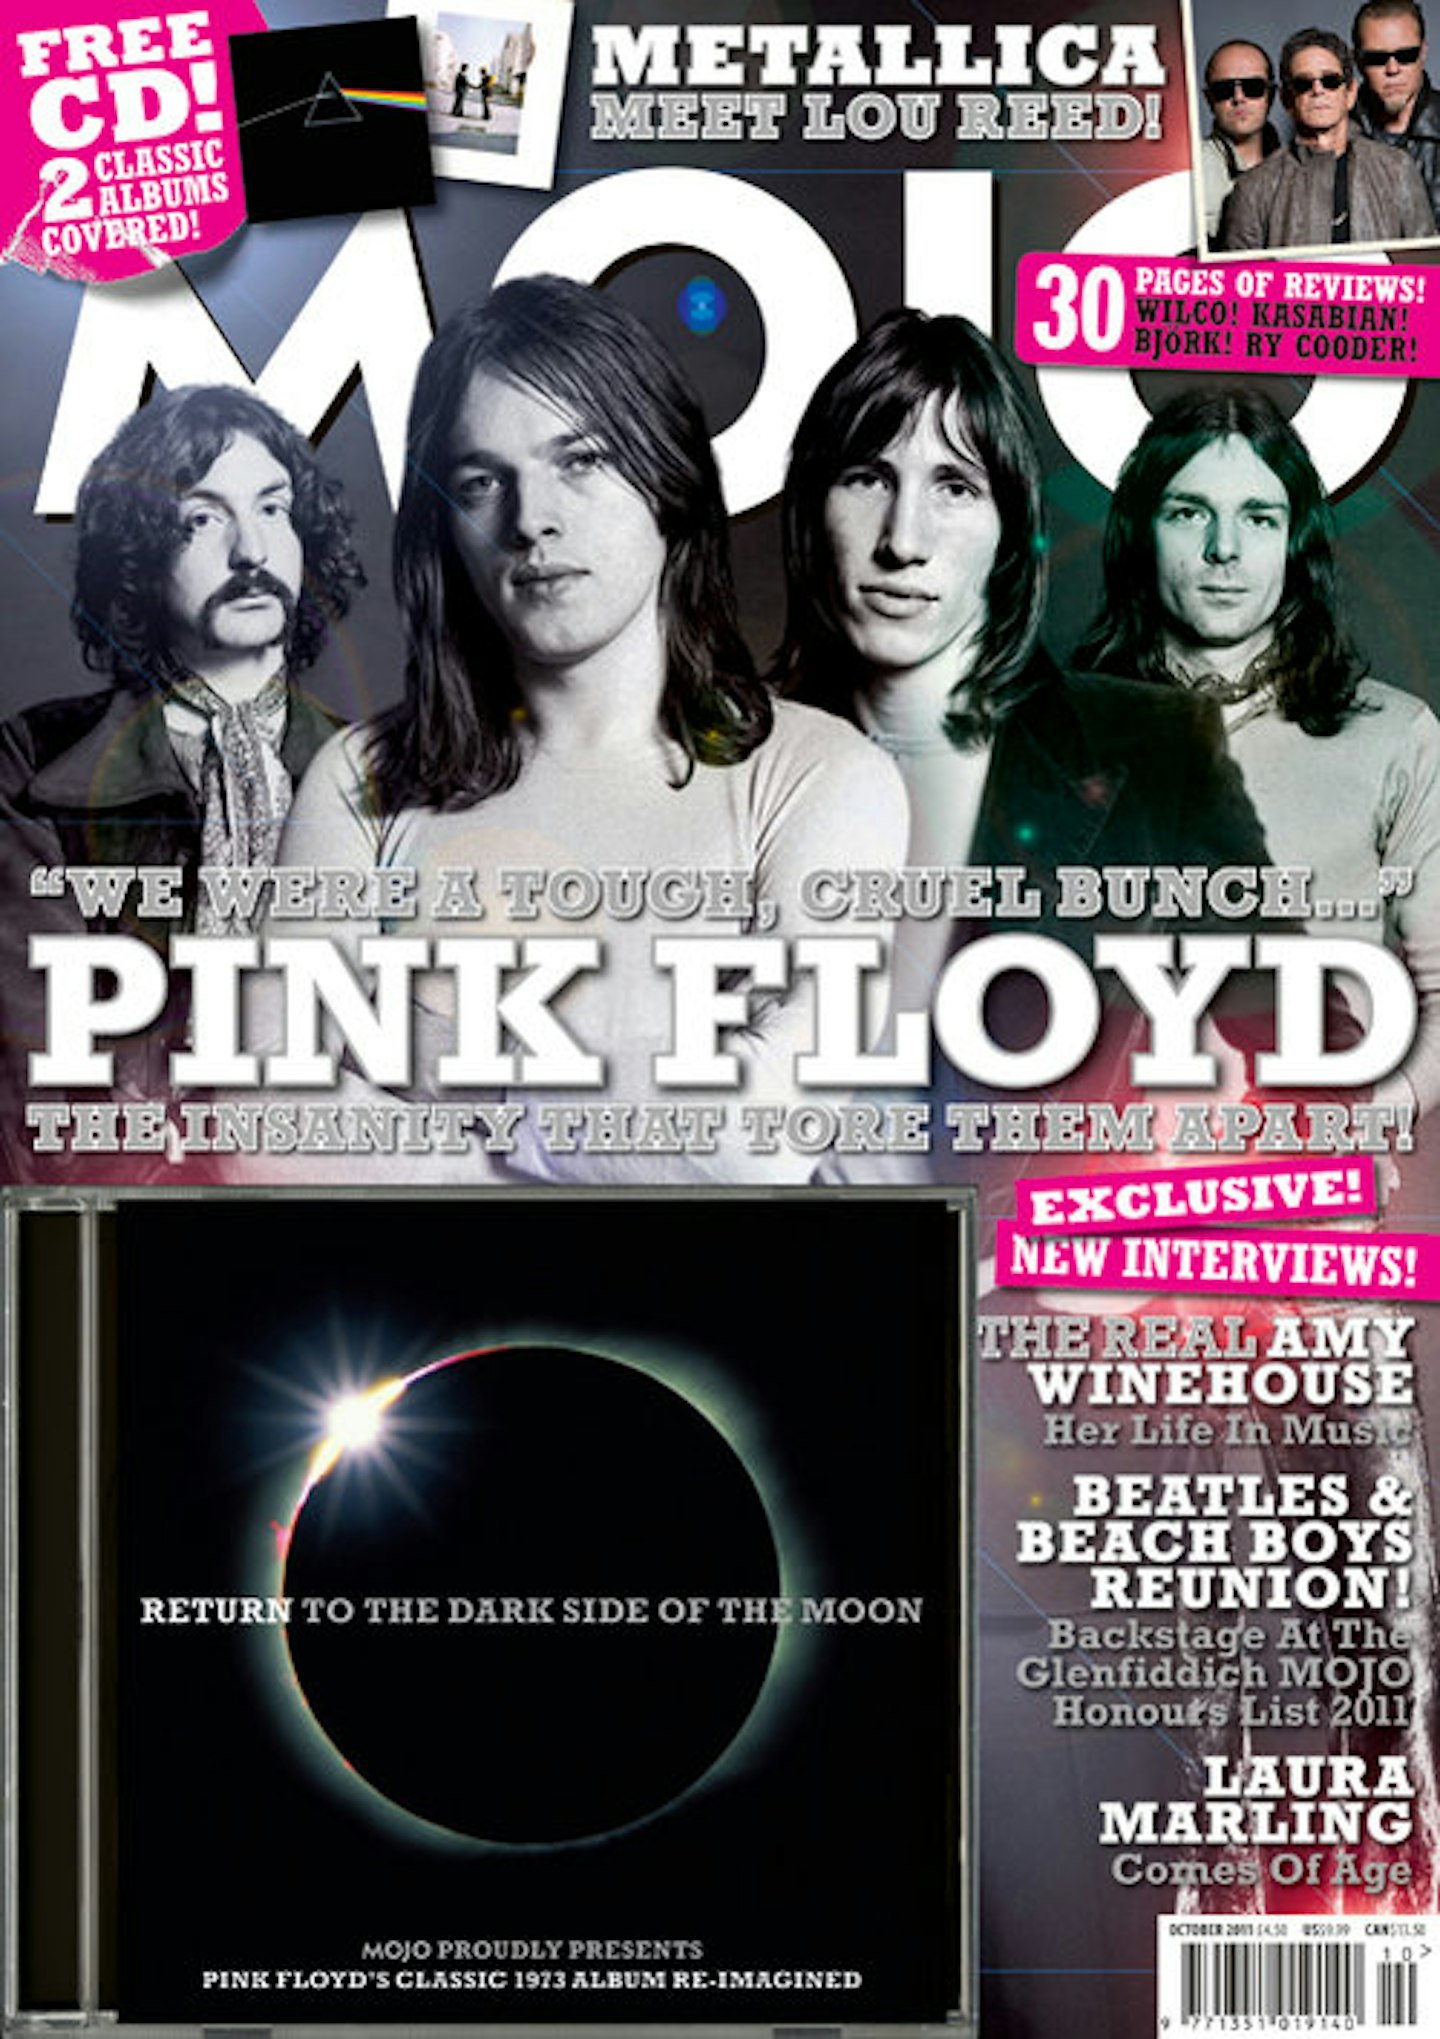 MOJO Issue 215 / October 2011